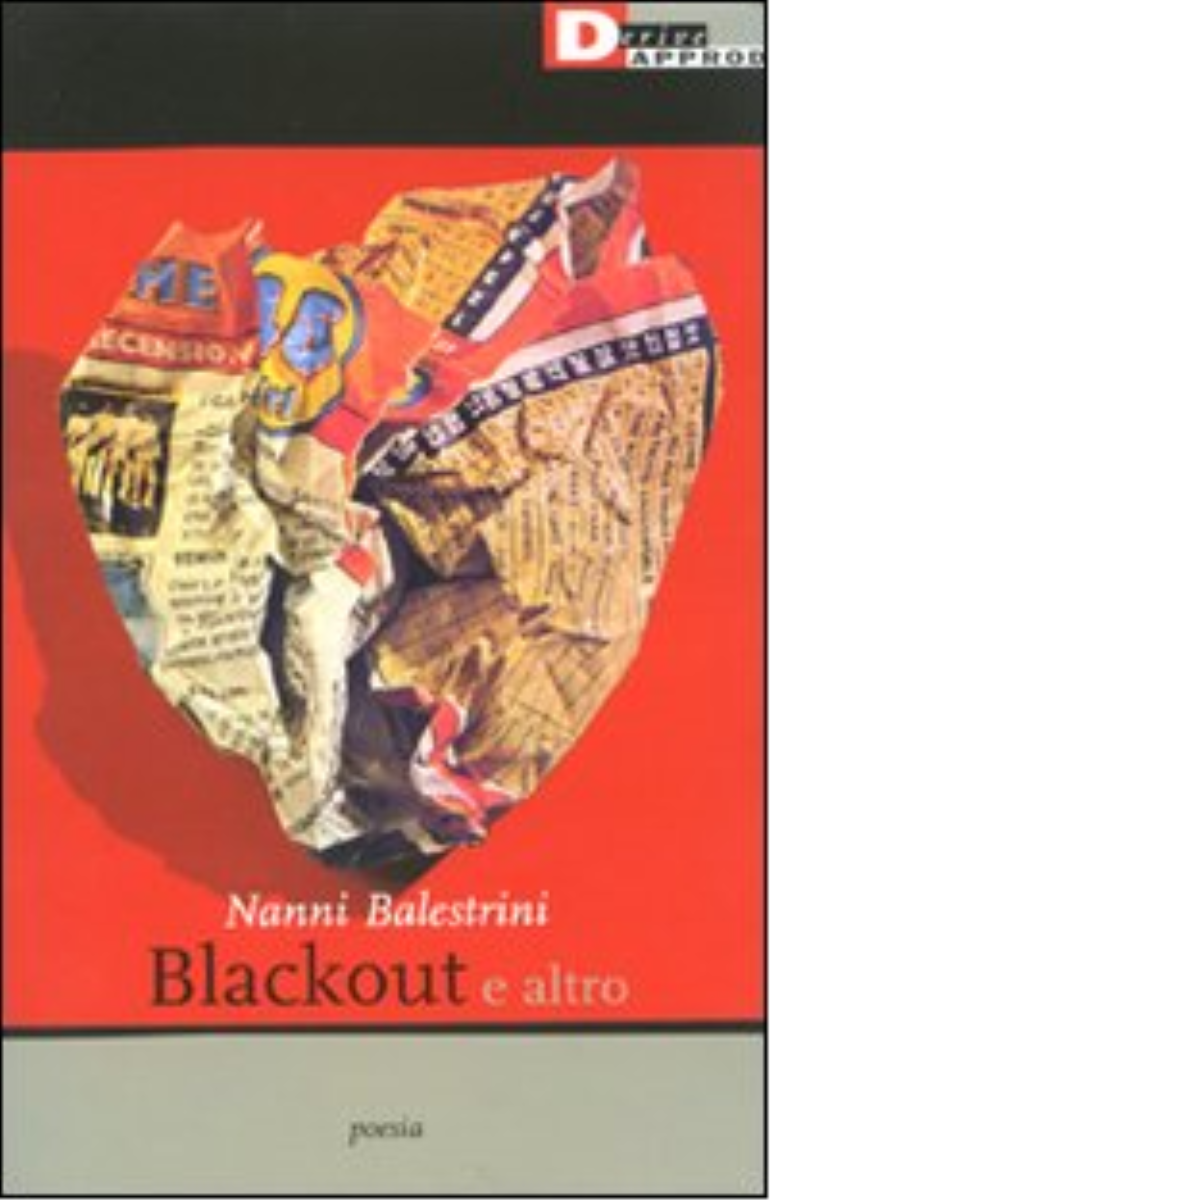 BLACKOUT E ALTRO di NANNI BALESTRINI - DeriveApprodi editore, 2009 libro usato